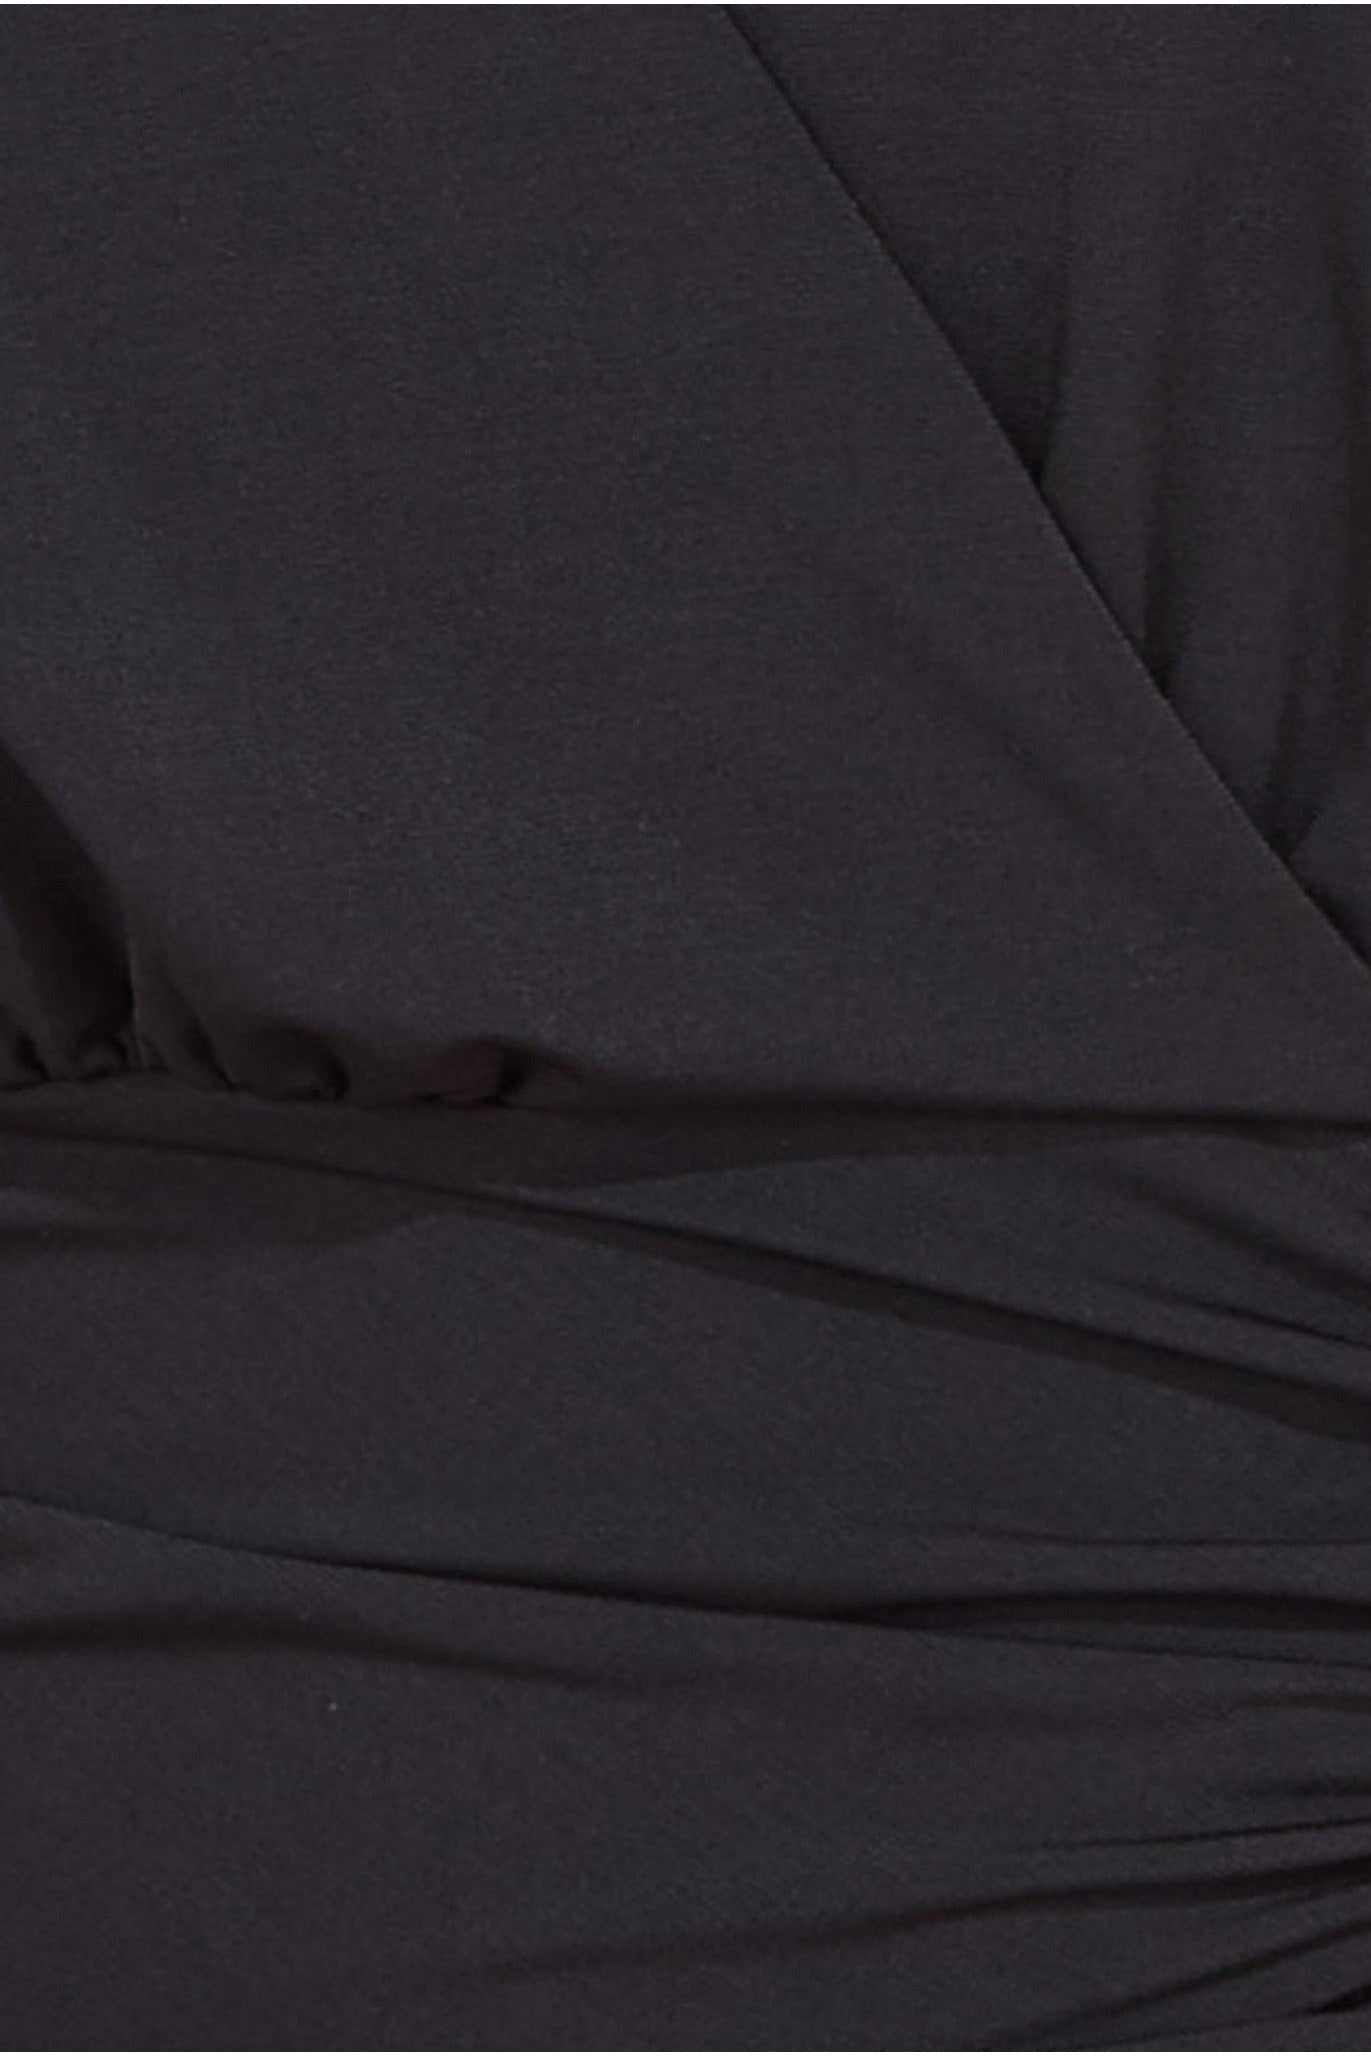 Goddiva Front Wrap Gathered Maxi Dress - Black